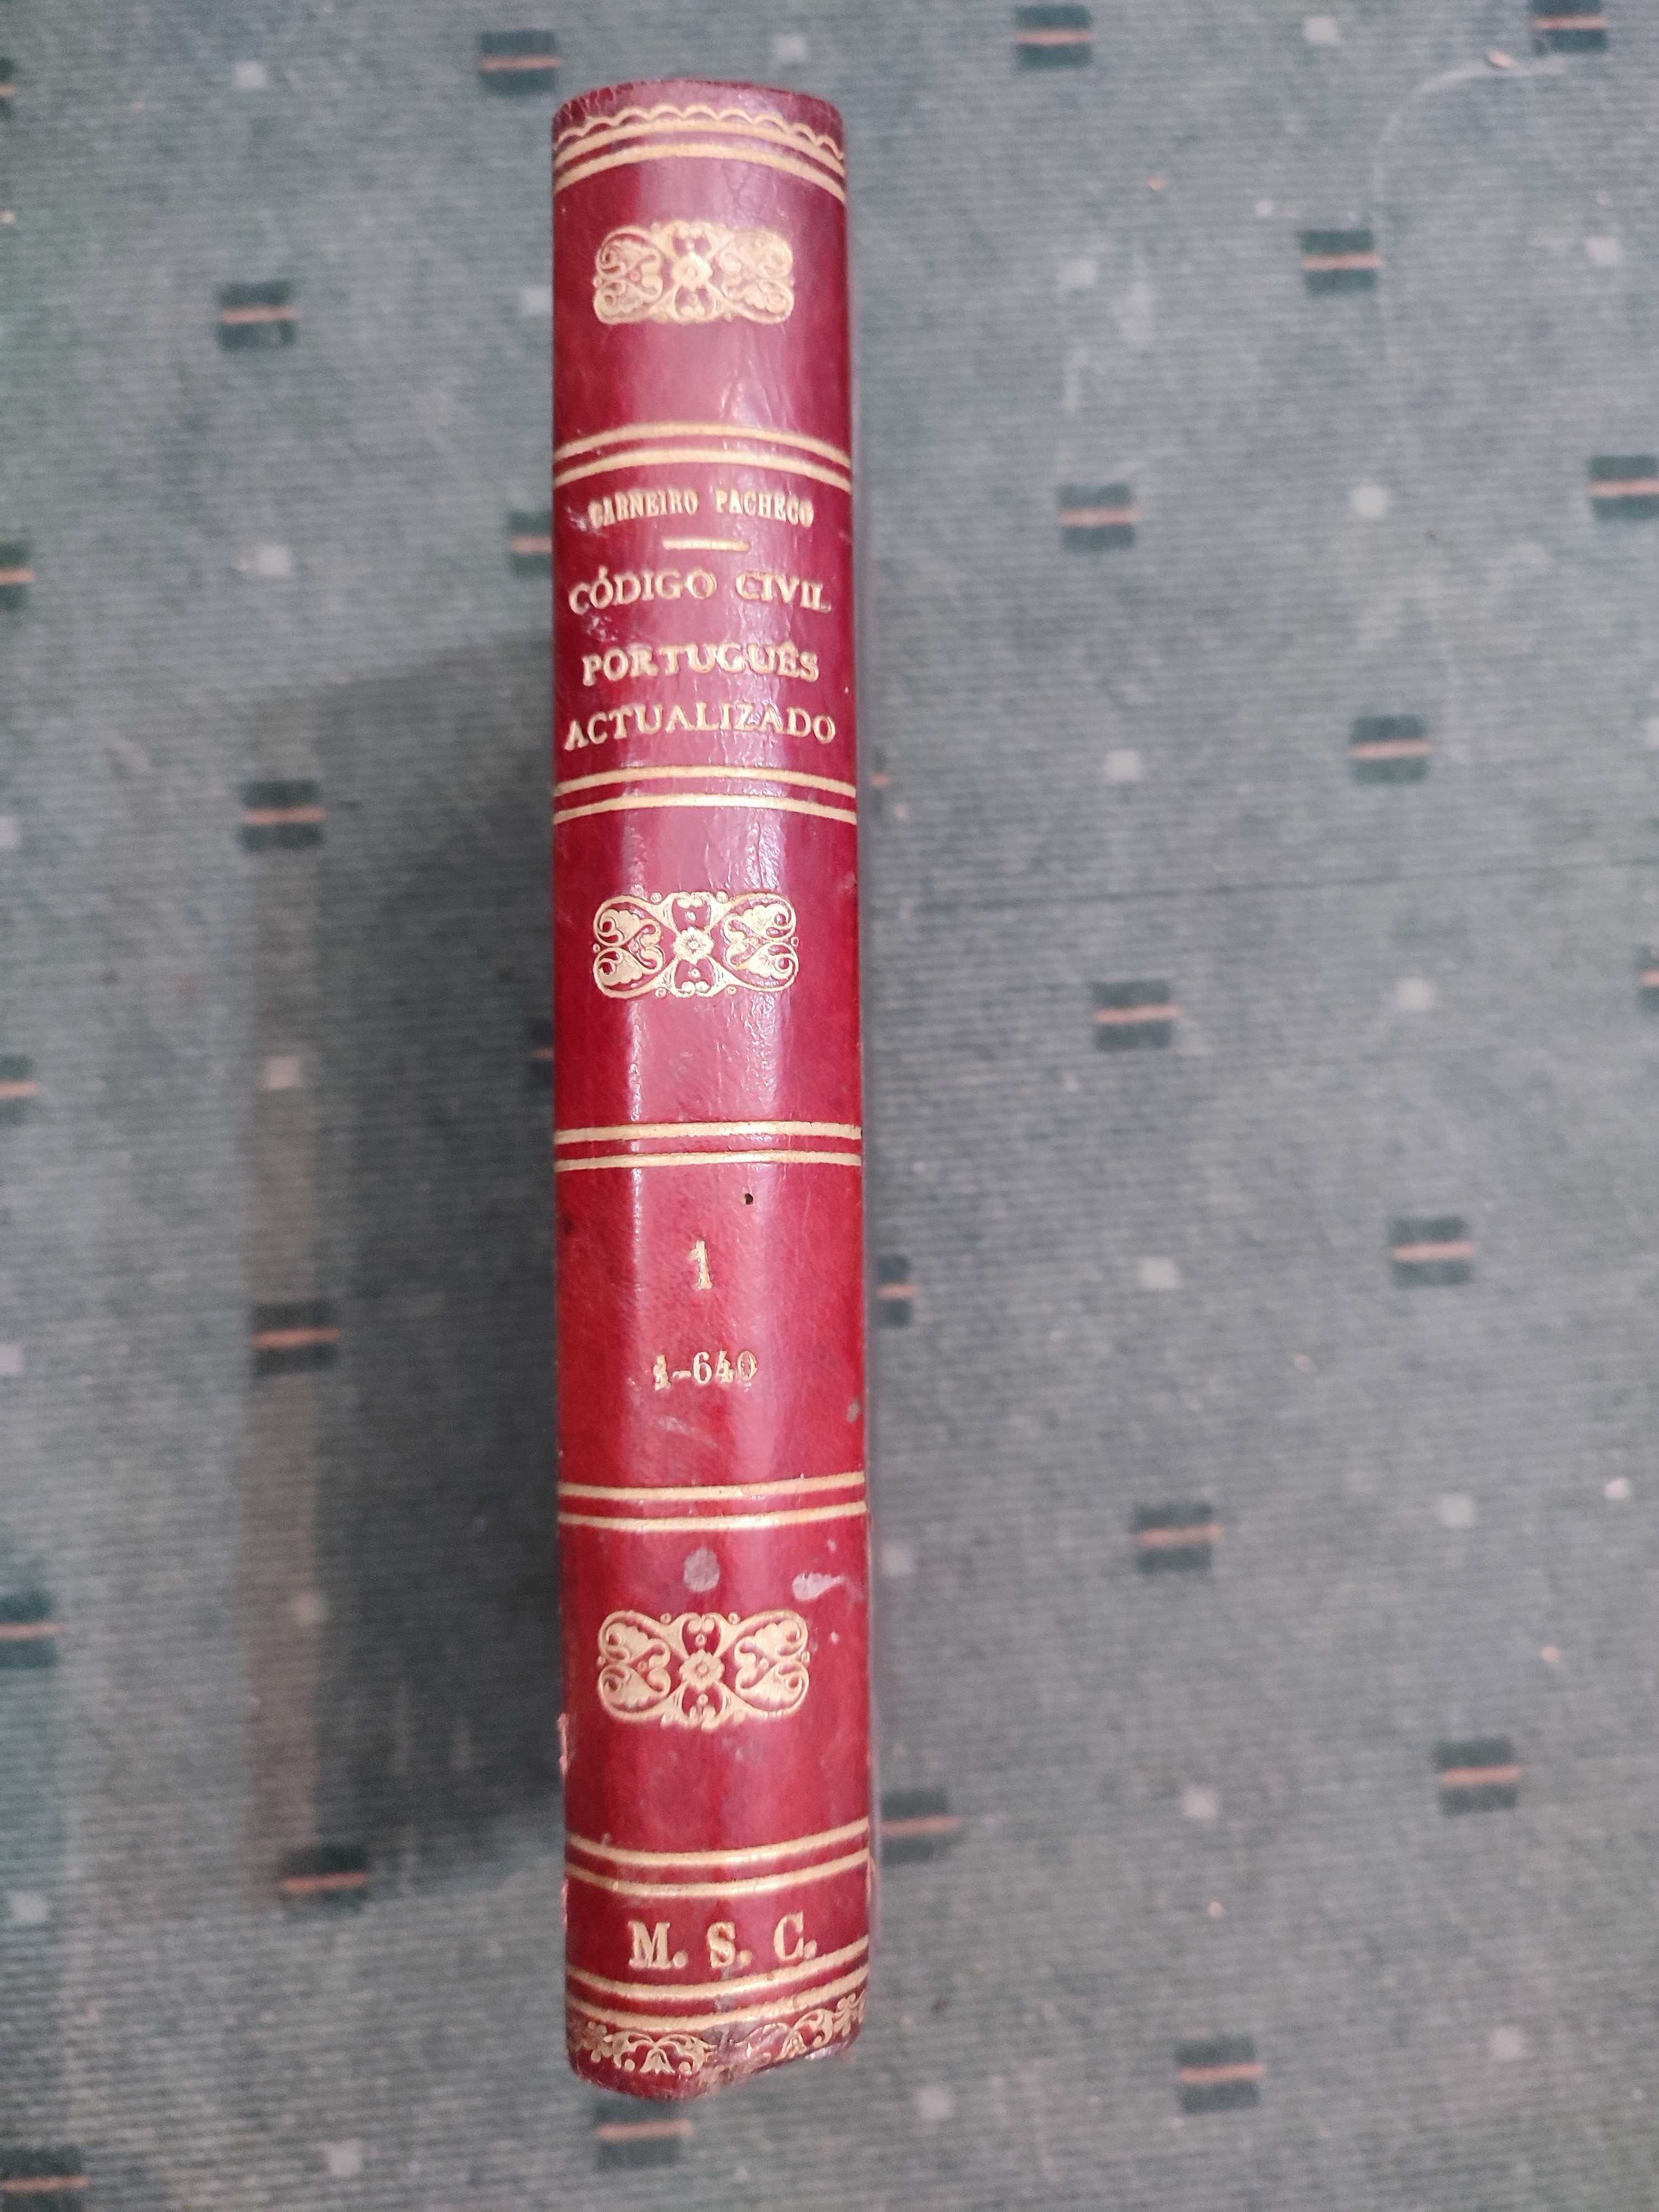 Código Civil Português Actualizado Vol I - A. F. Carneiro Pacheco-1920